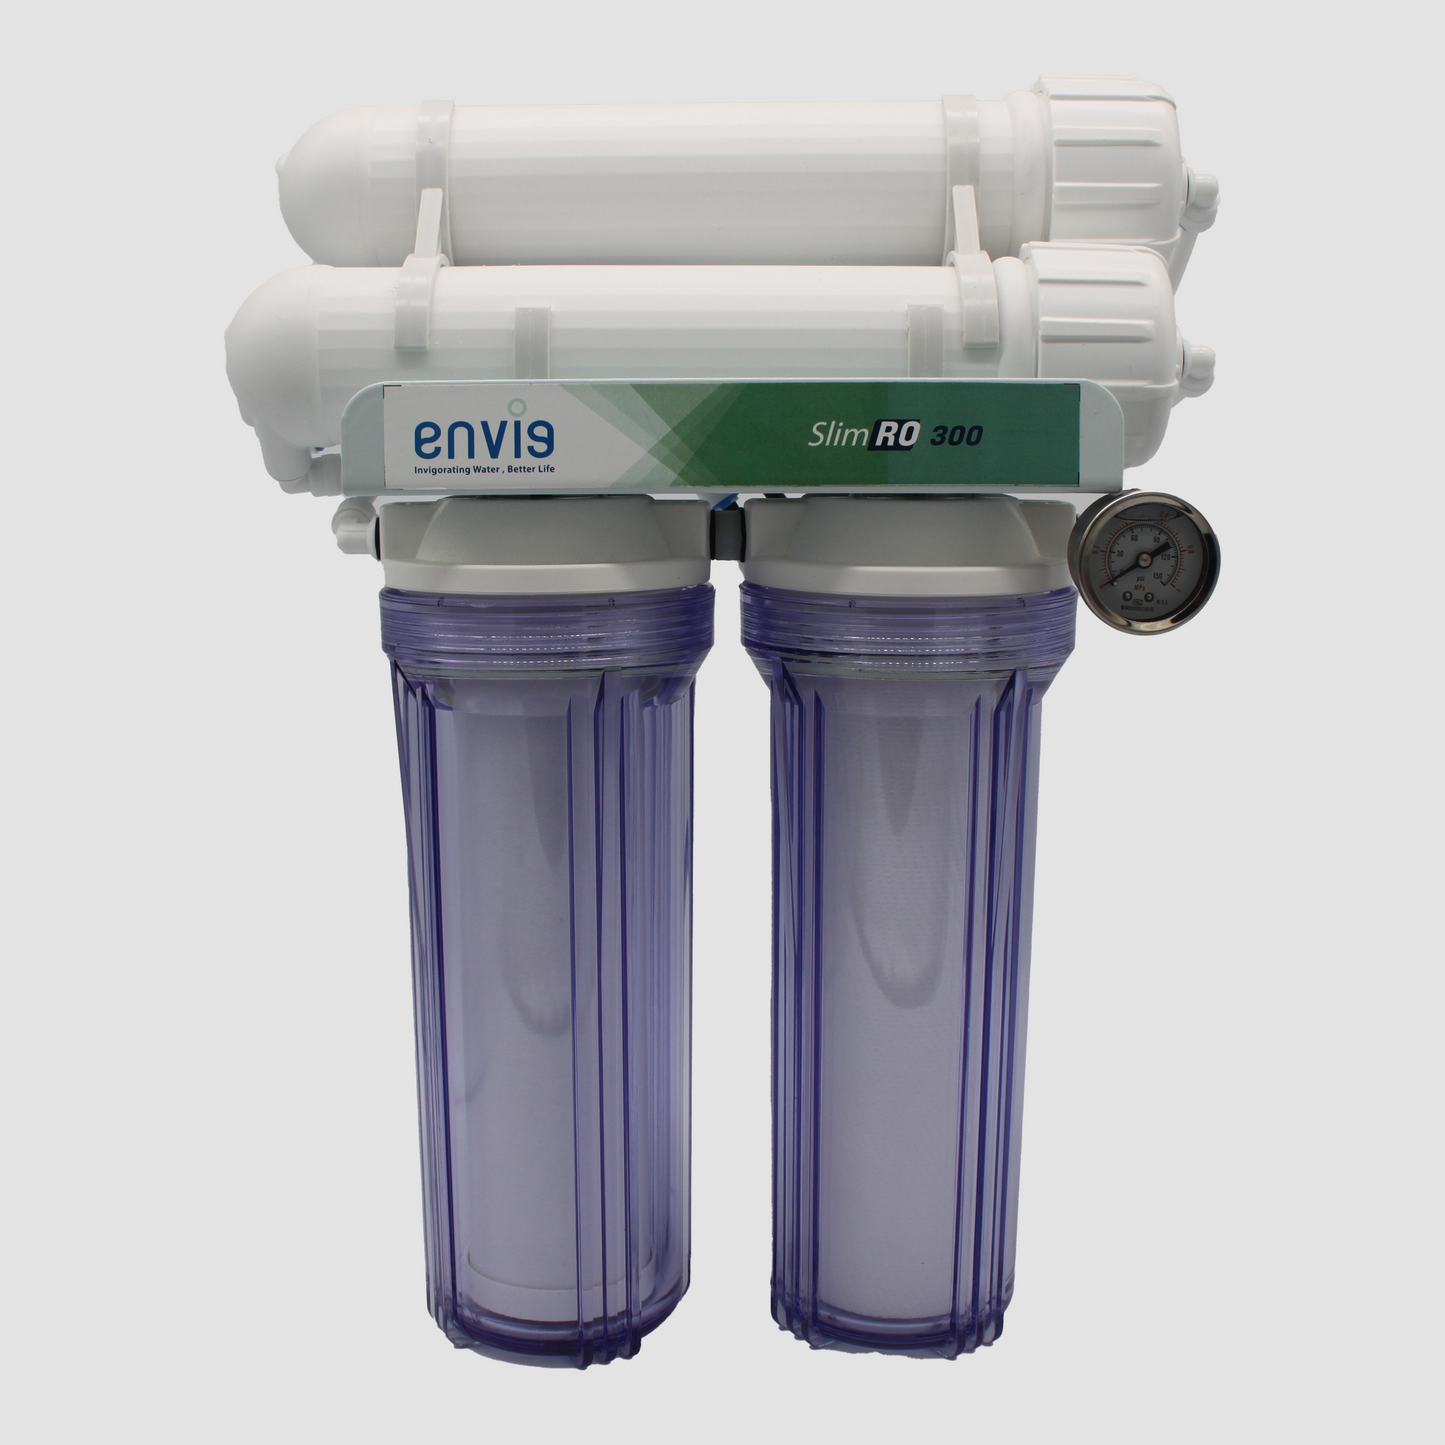 Slim-RO300 Reverse Osmosis System